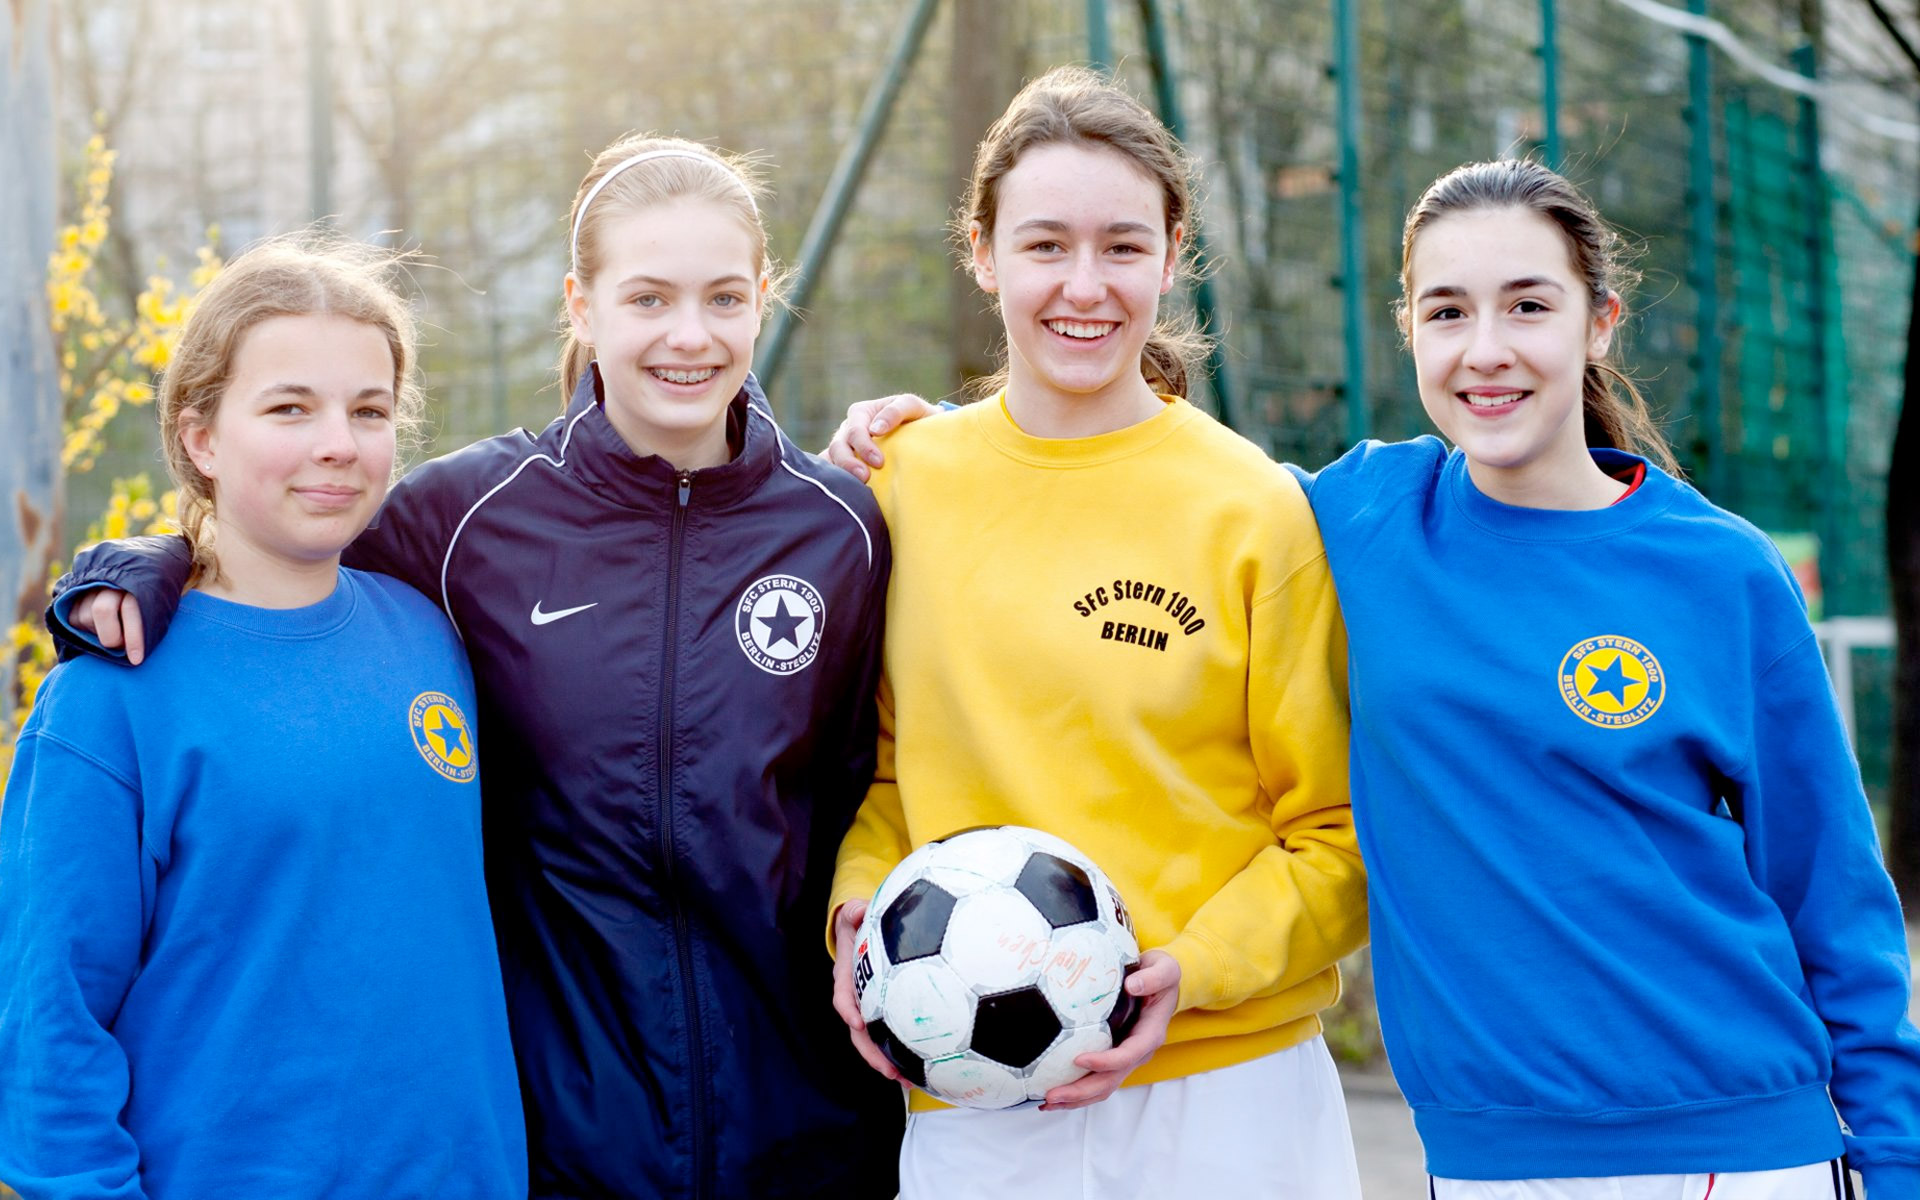 Gruppenfoto von vier Mädchen in Fußballsachen mit Ball